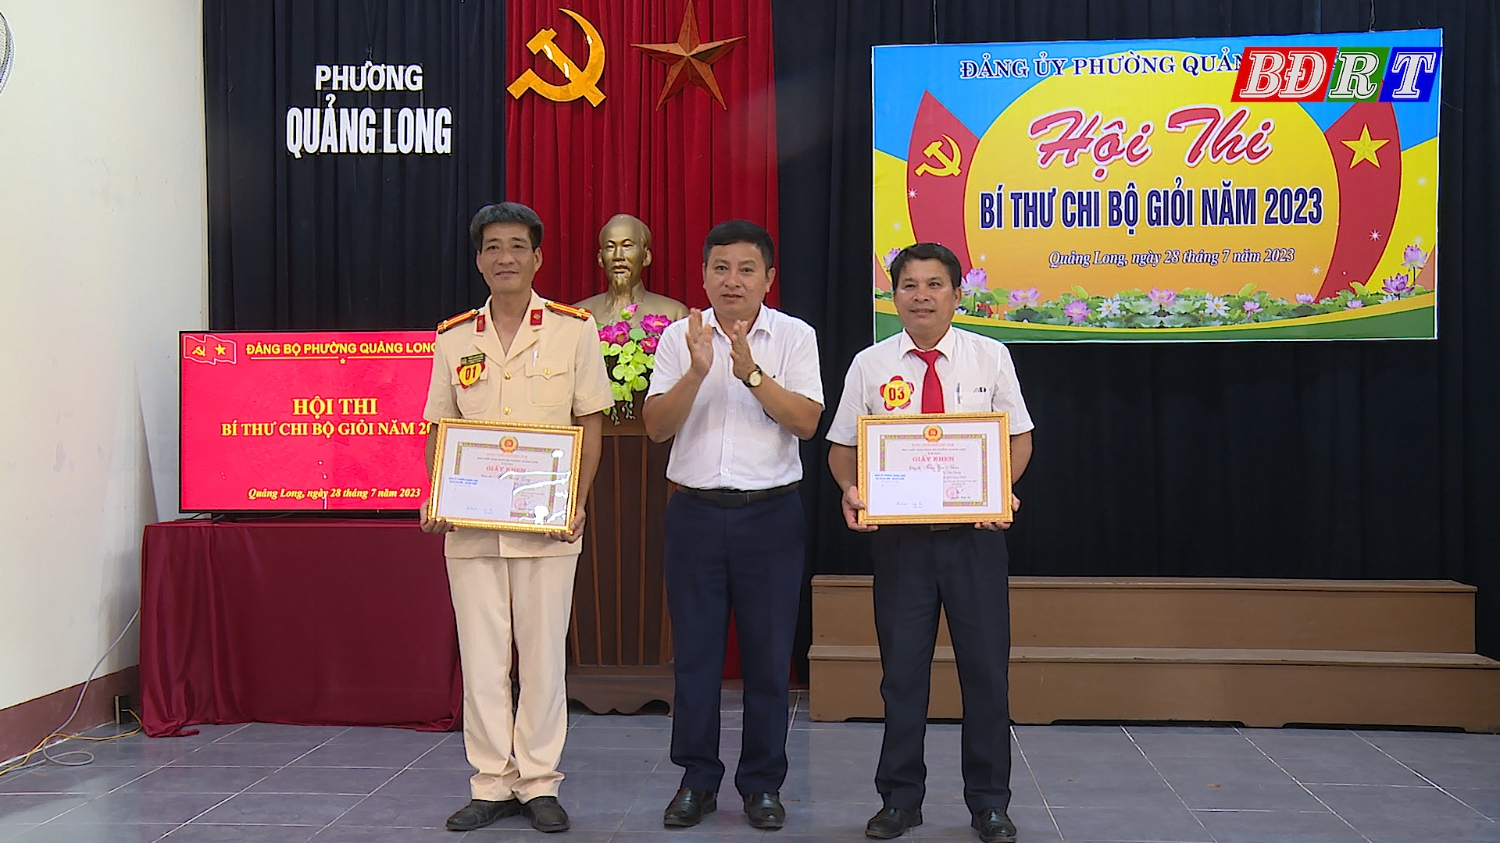 Ban Tổ chức đã trao đồng giải ba cho Bí thư chi bộ TDP Tiền Phong và Bí thư chi bộ Công an